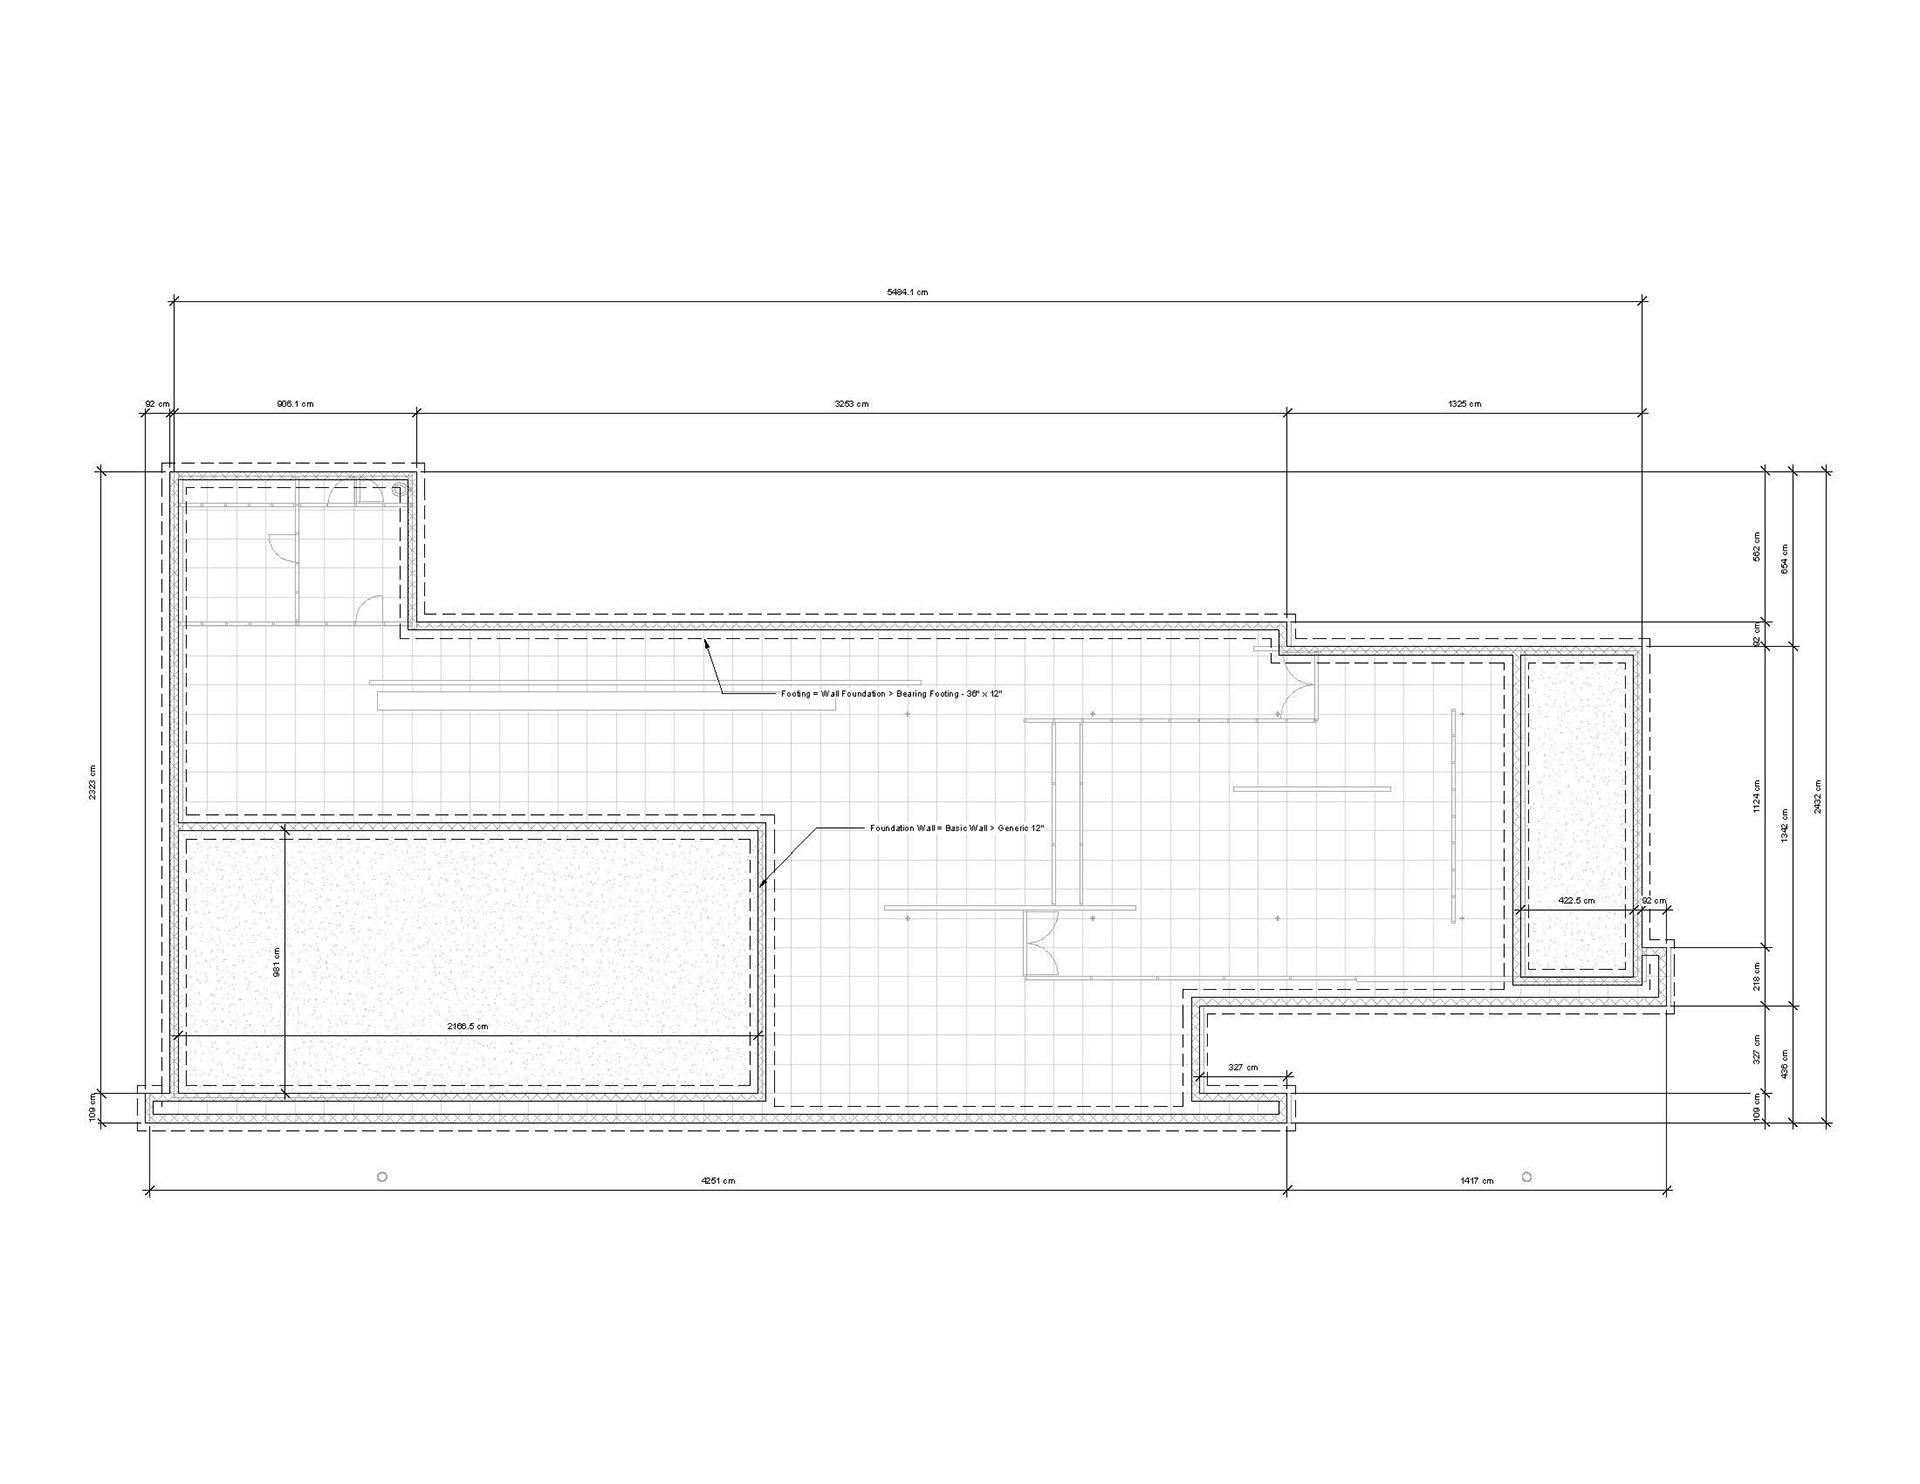 有谁知道巴塞罗那博览会德国馆的尺寸吗建筑课模型作业急需